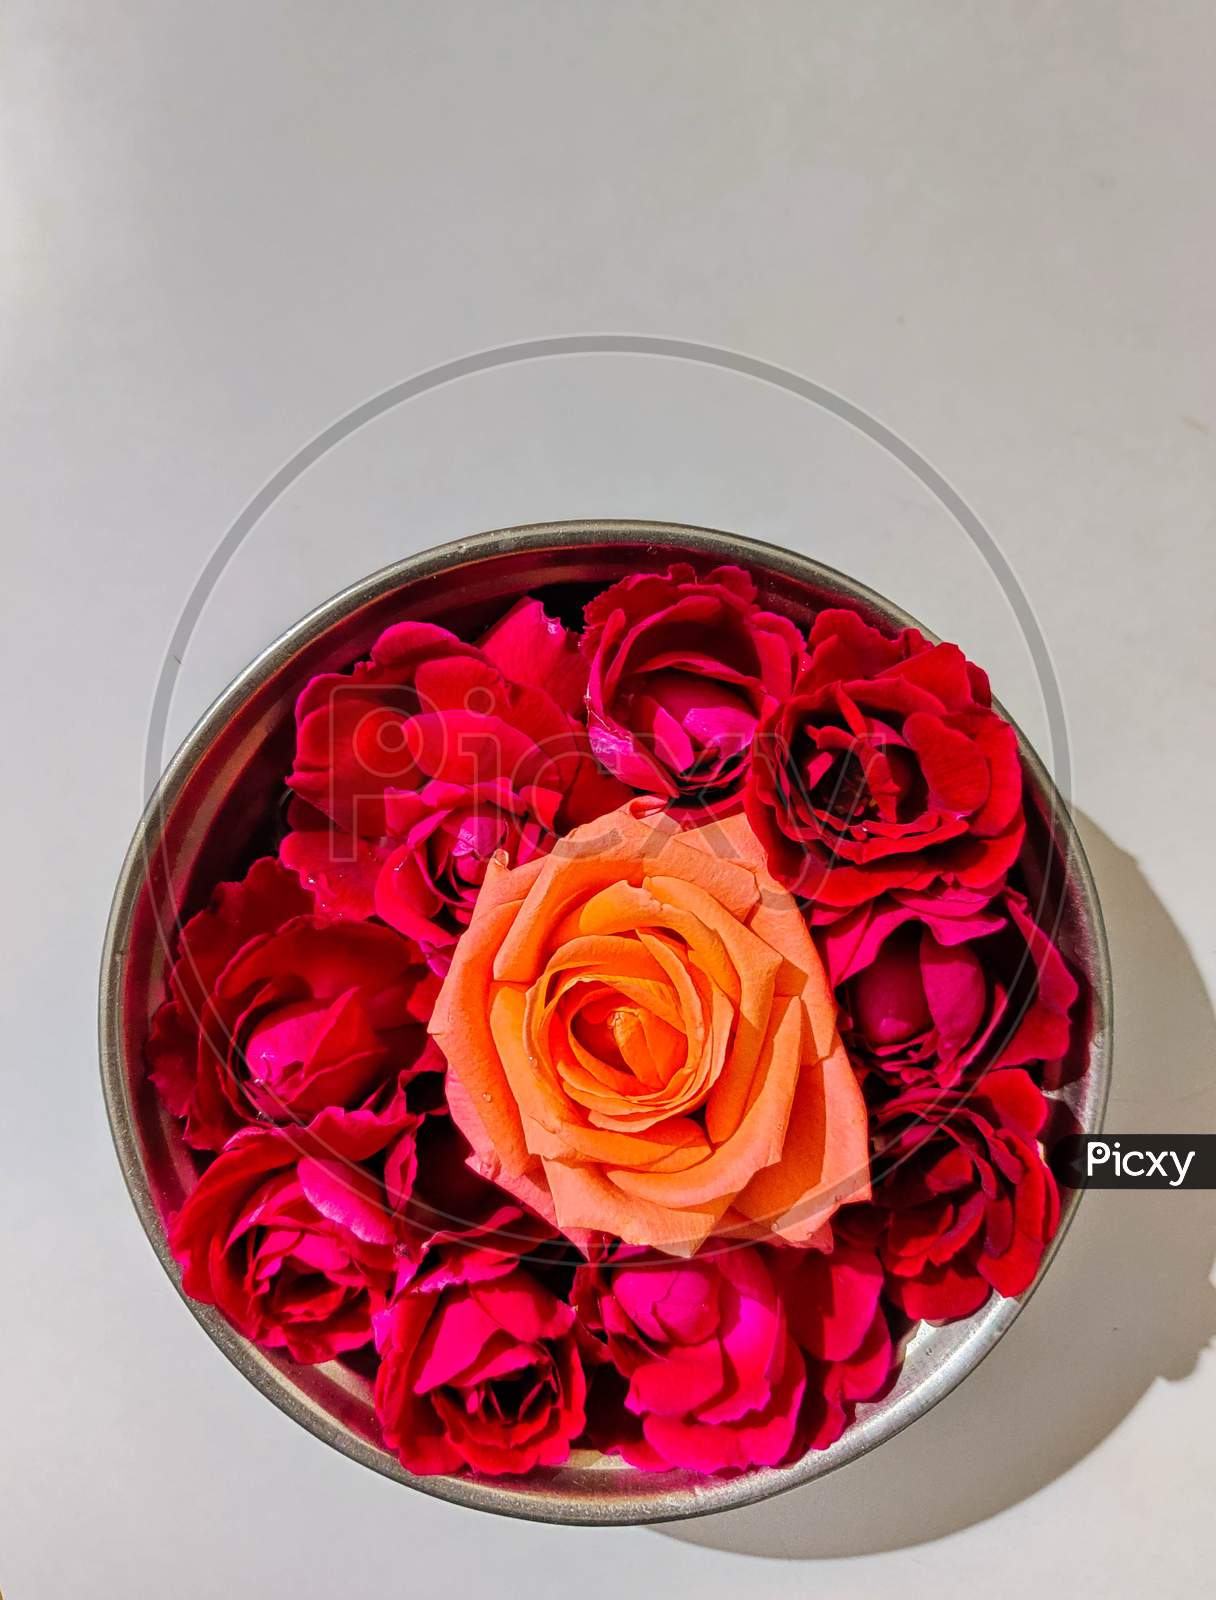 Beautiful oranges pink flower between red roses in bowl